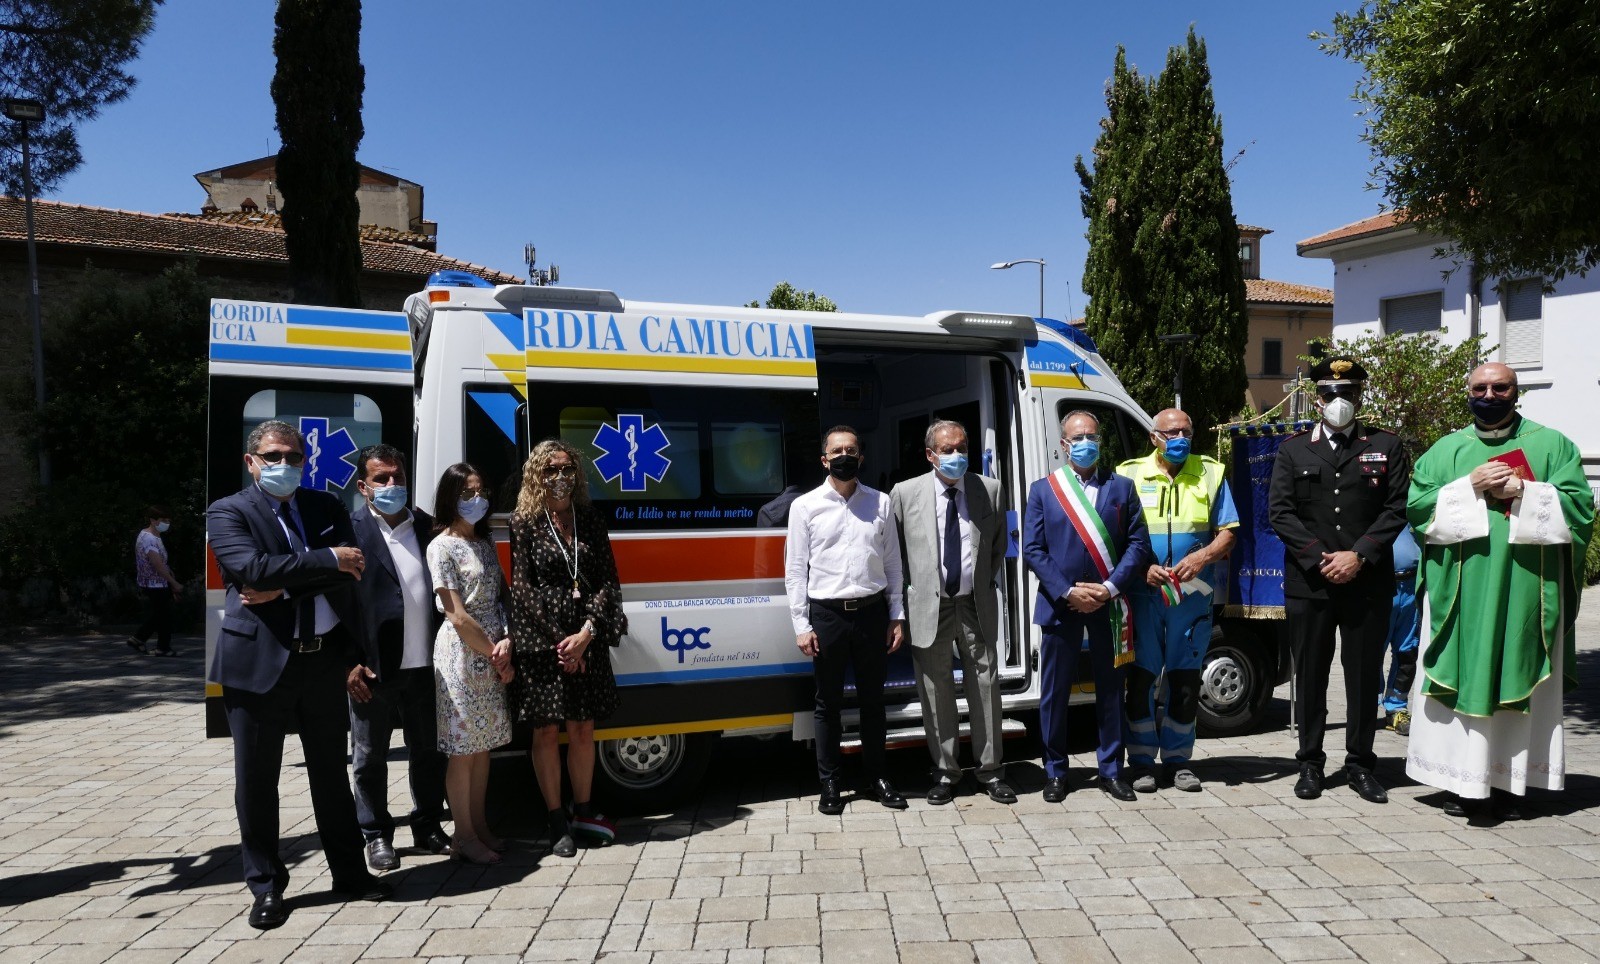 Festa a Camucia per la nuova Ambulanza donata dalla Bpc